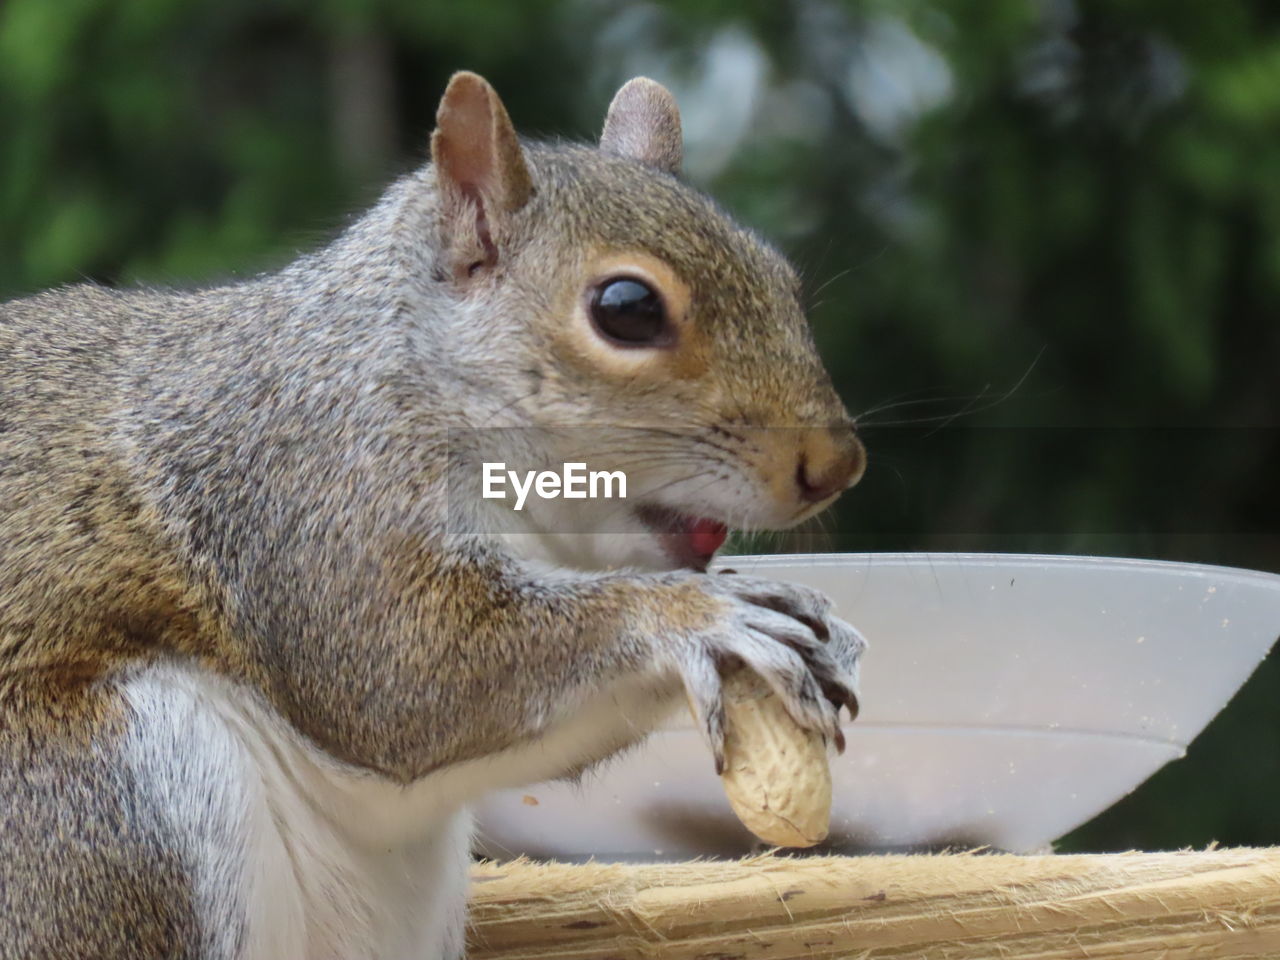 Closeup of a squirrel eating a peanut